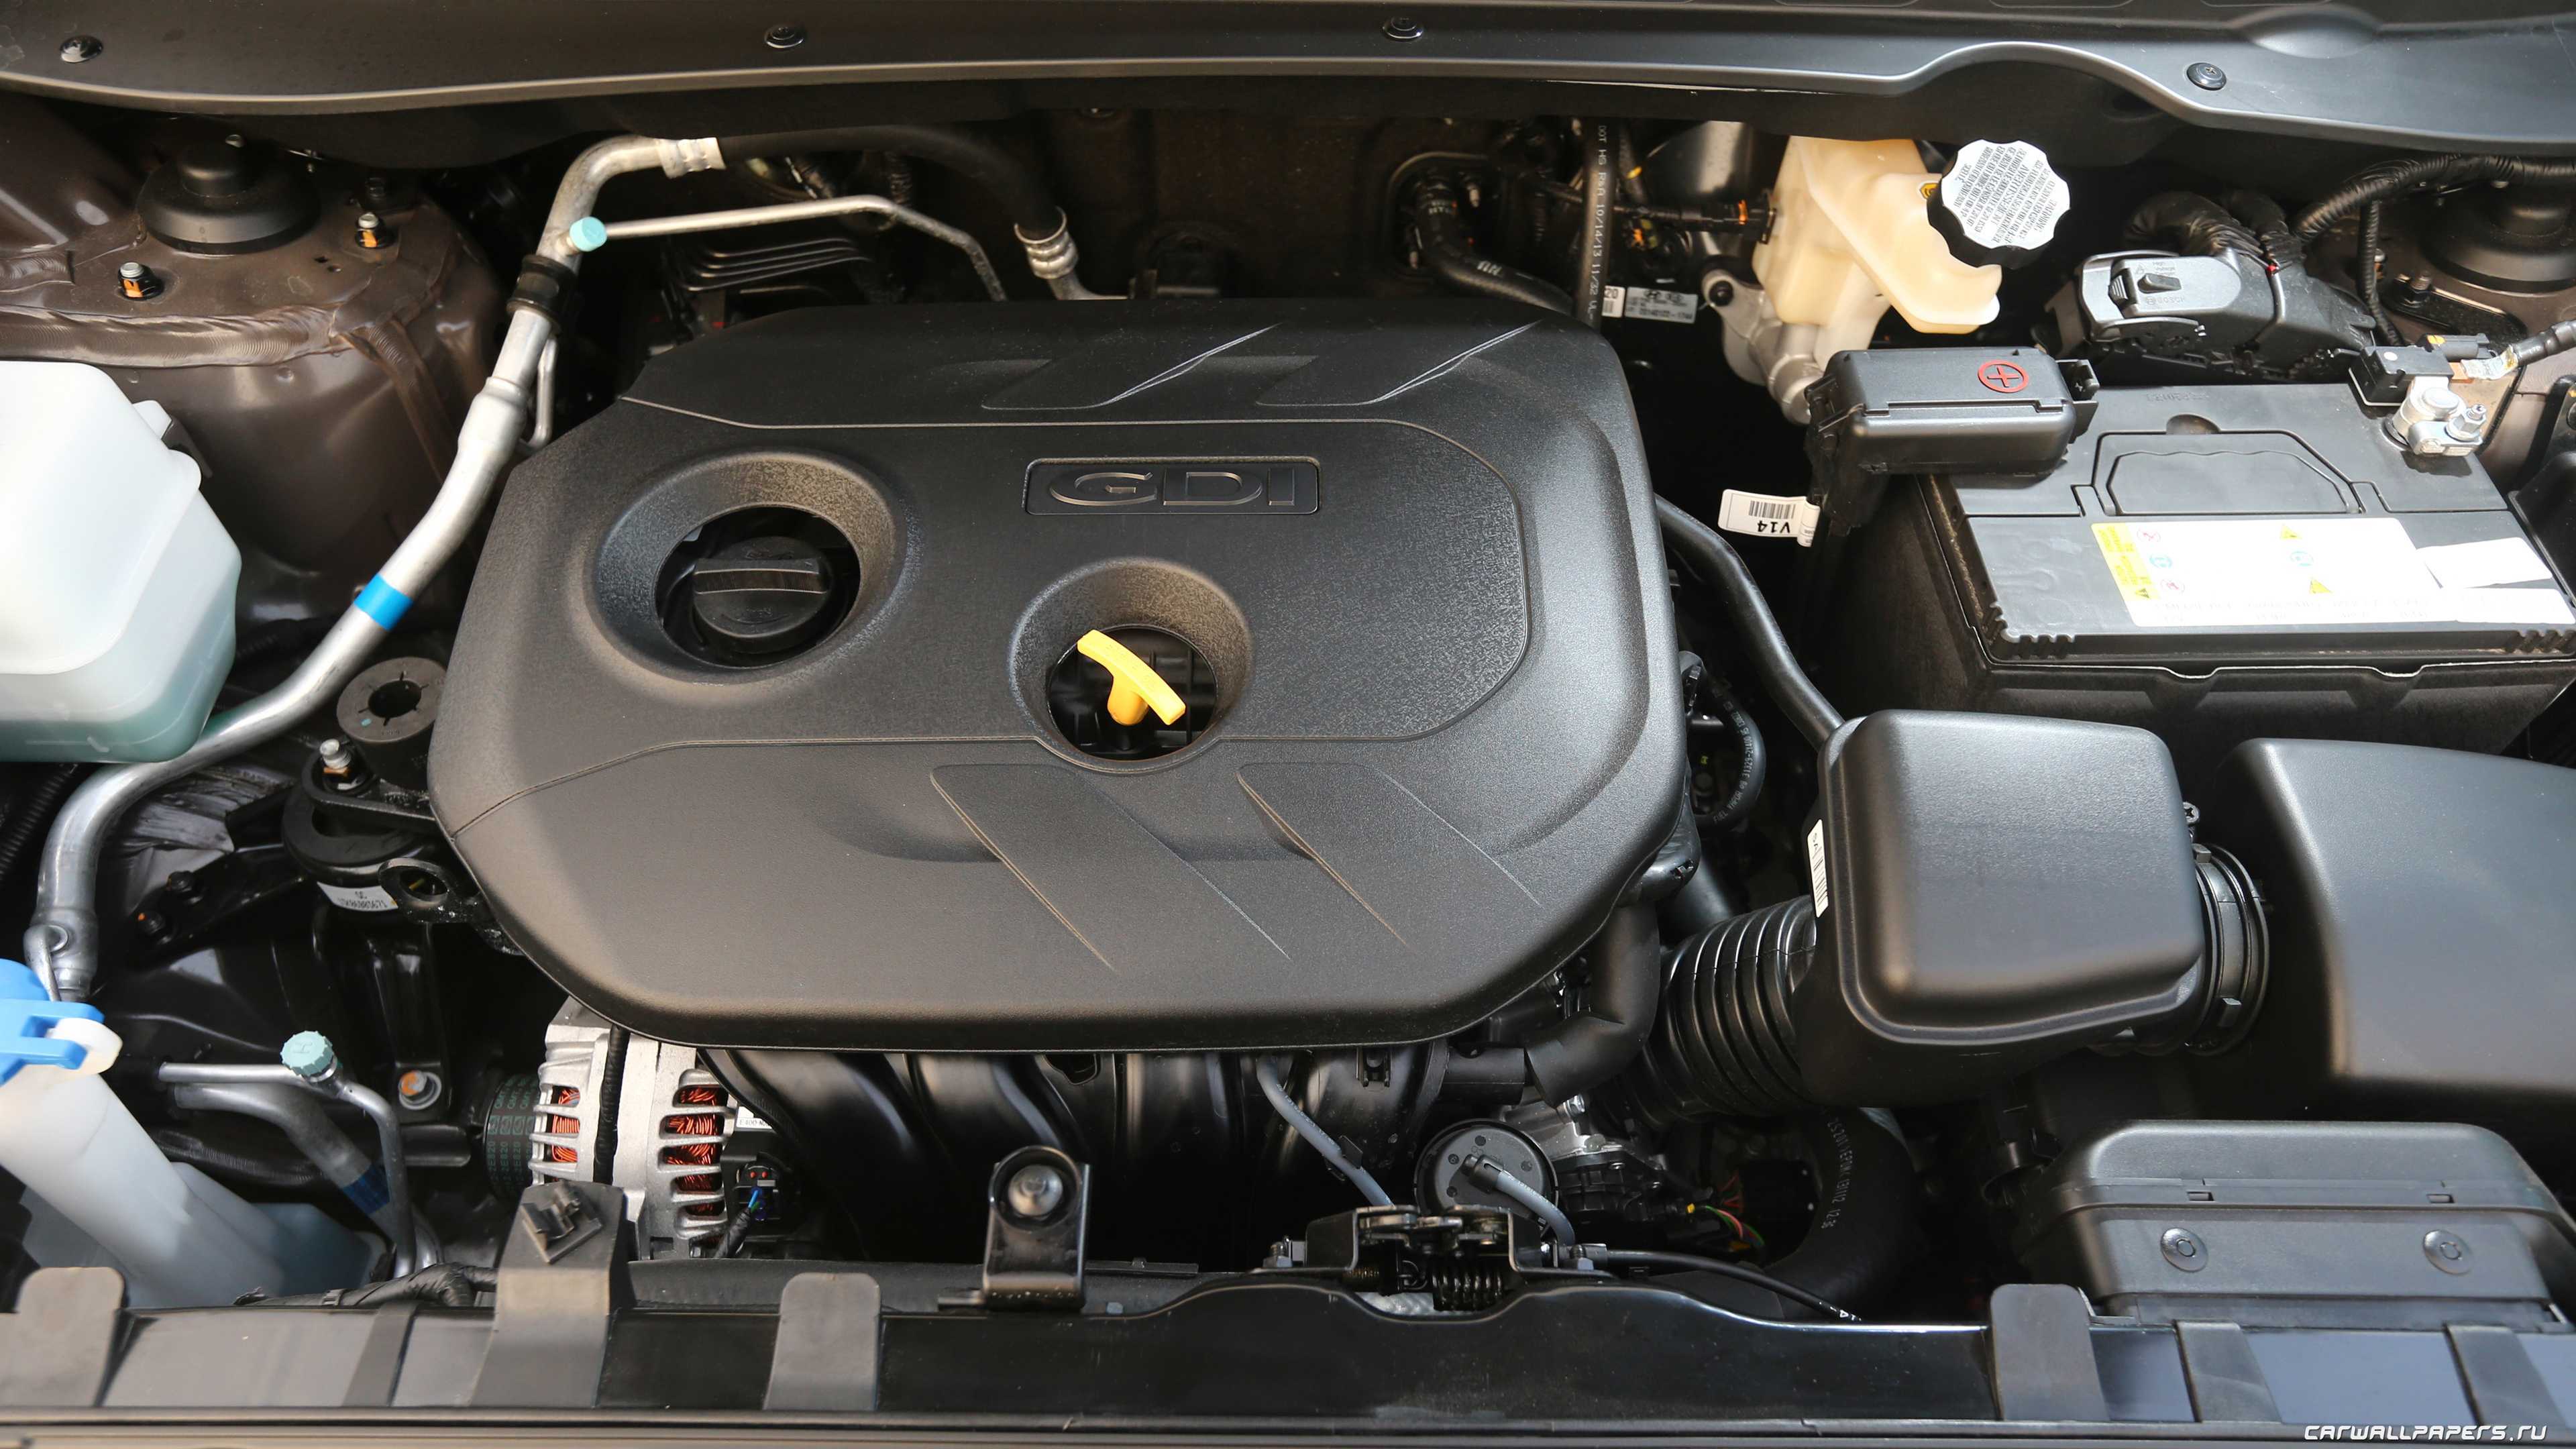 Ремонт двигателя киа спортейдж бензин. Kia Sportage 2014 под капотом. Kia Sportage 2014 двигатель. Kia Sportage 3 двигатель 2.0. Двигатель Киа Спортаж 3.